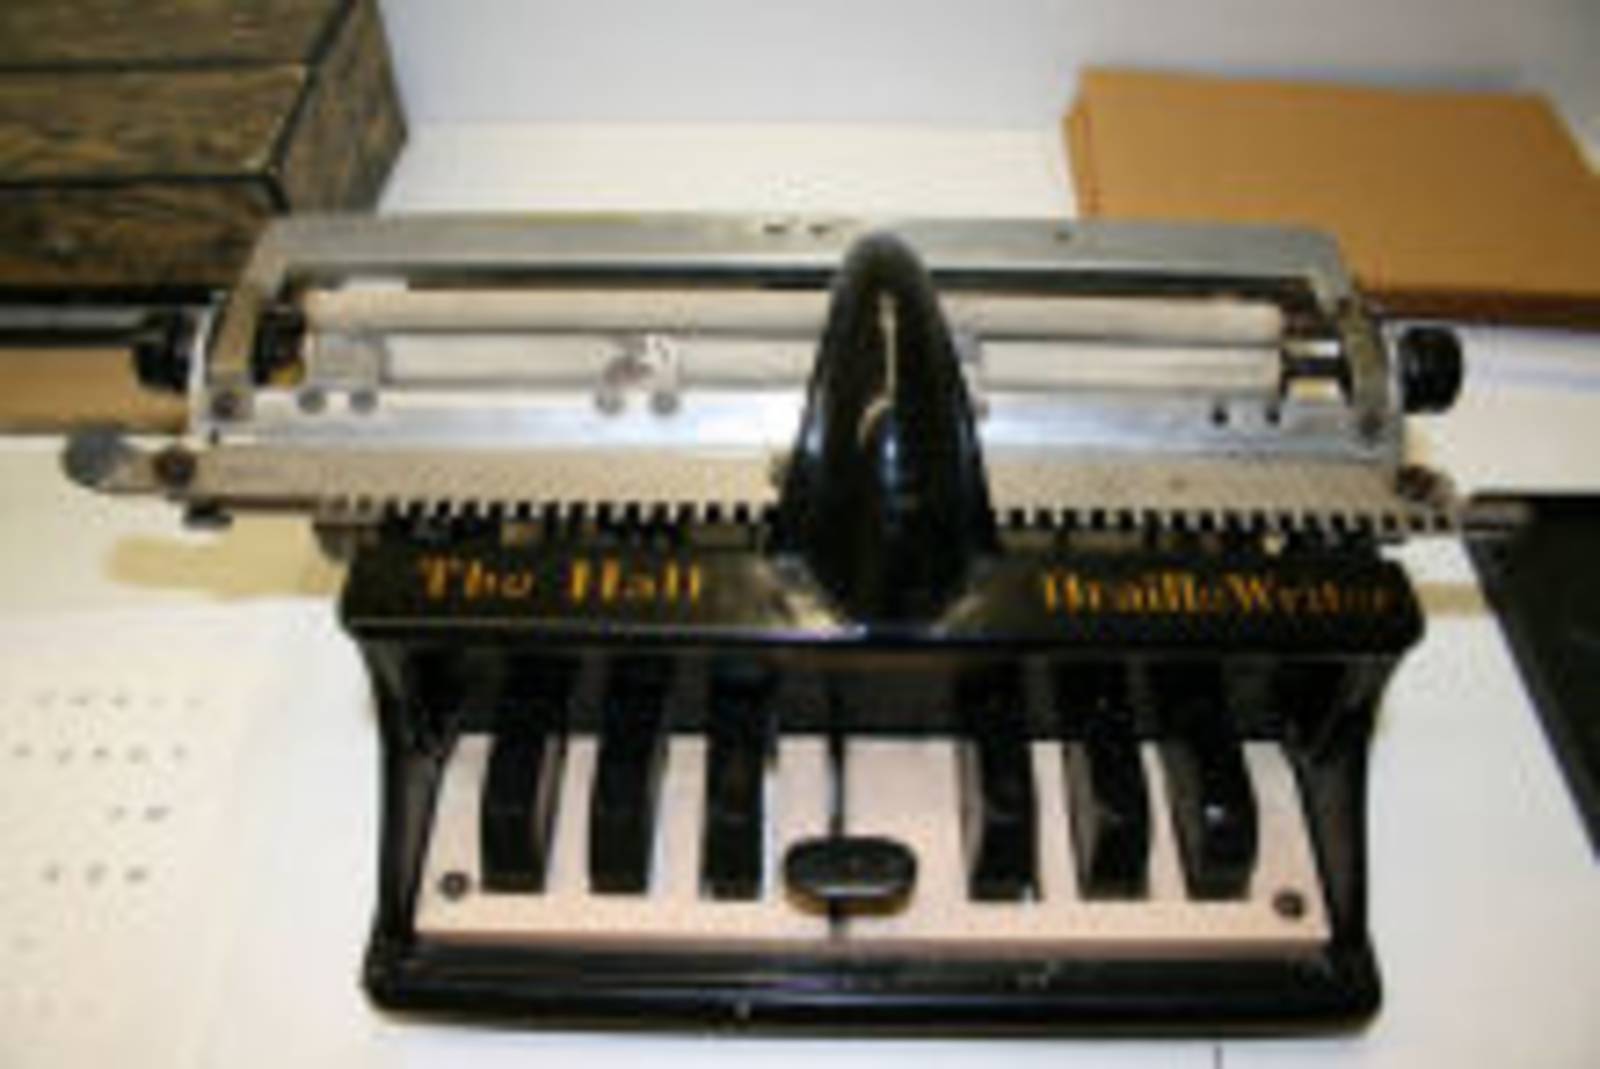 Maschine zum Schreiben der Brailleschrift

